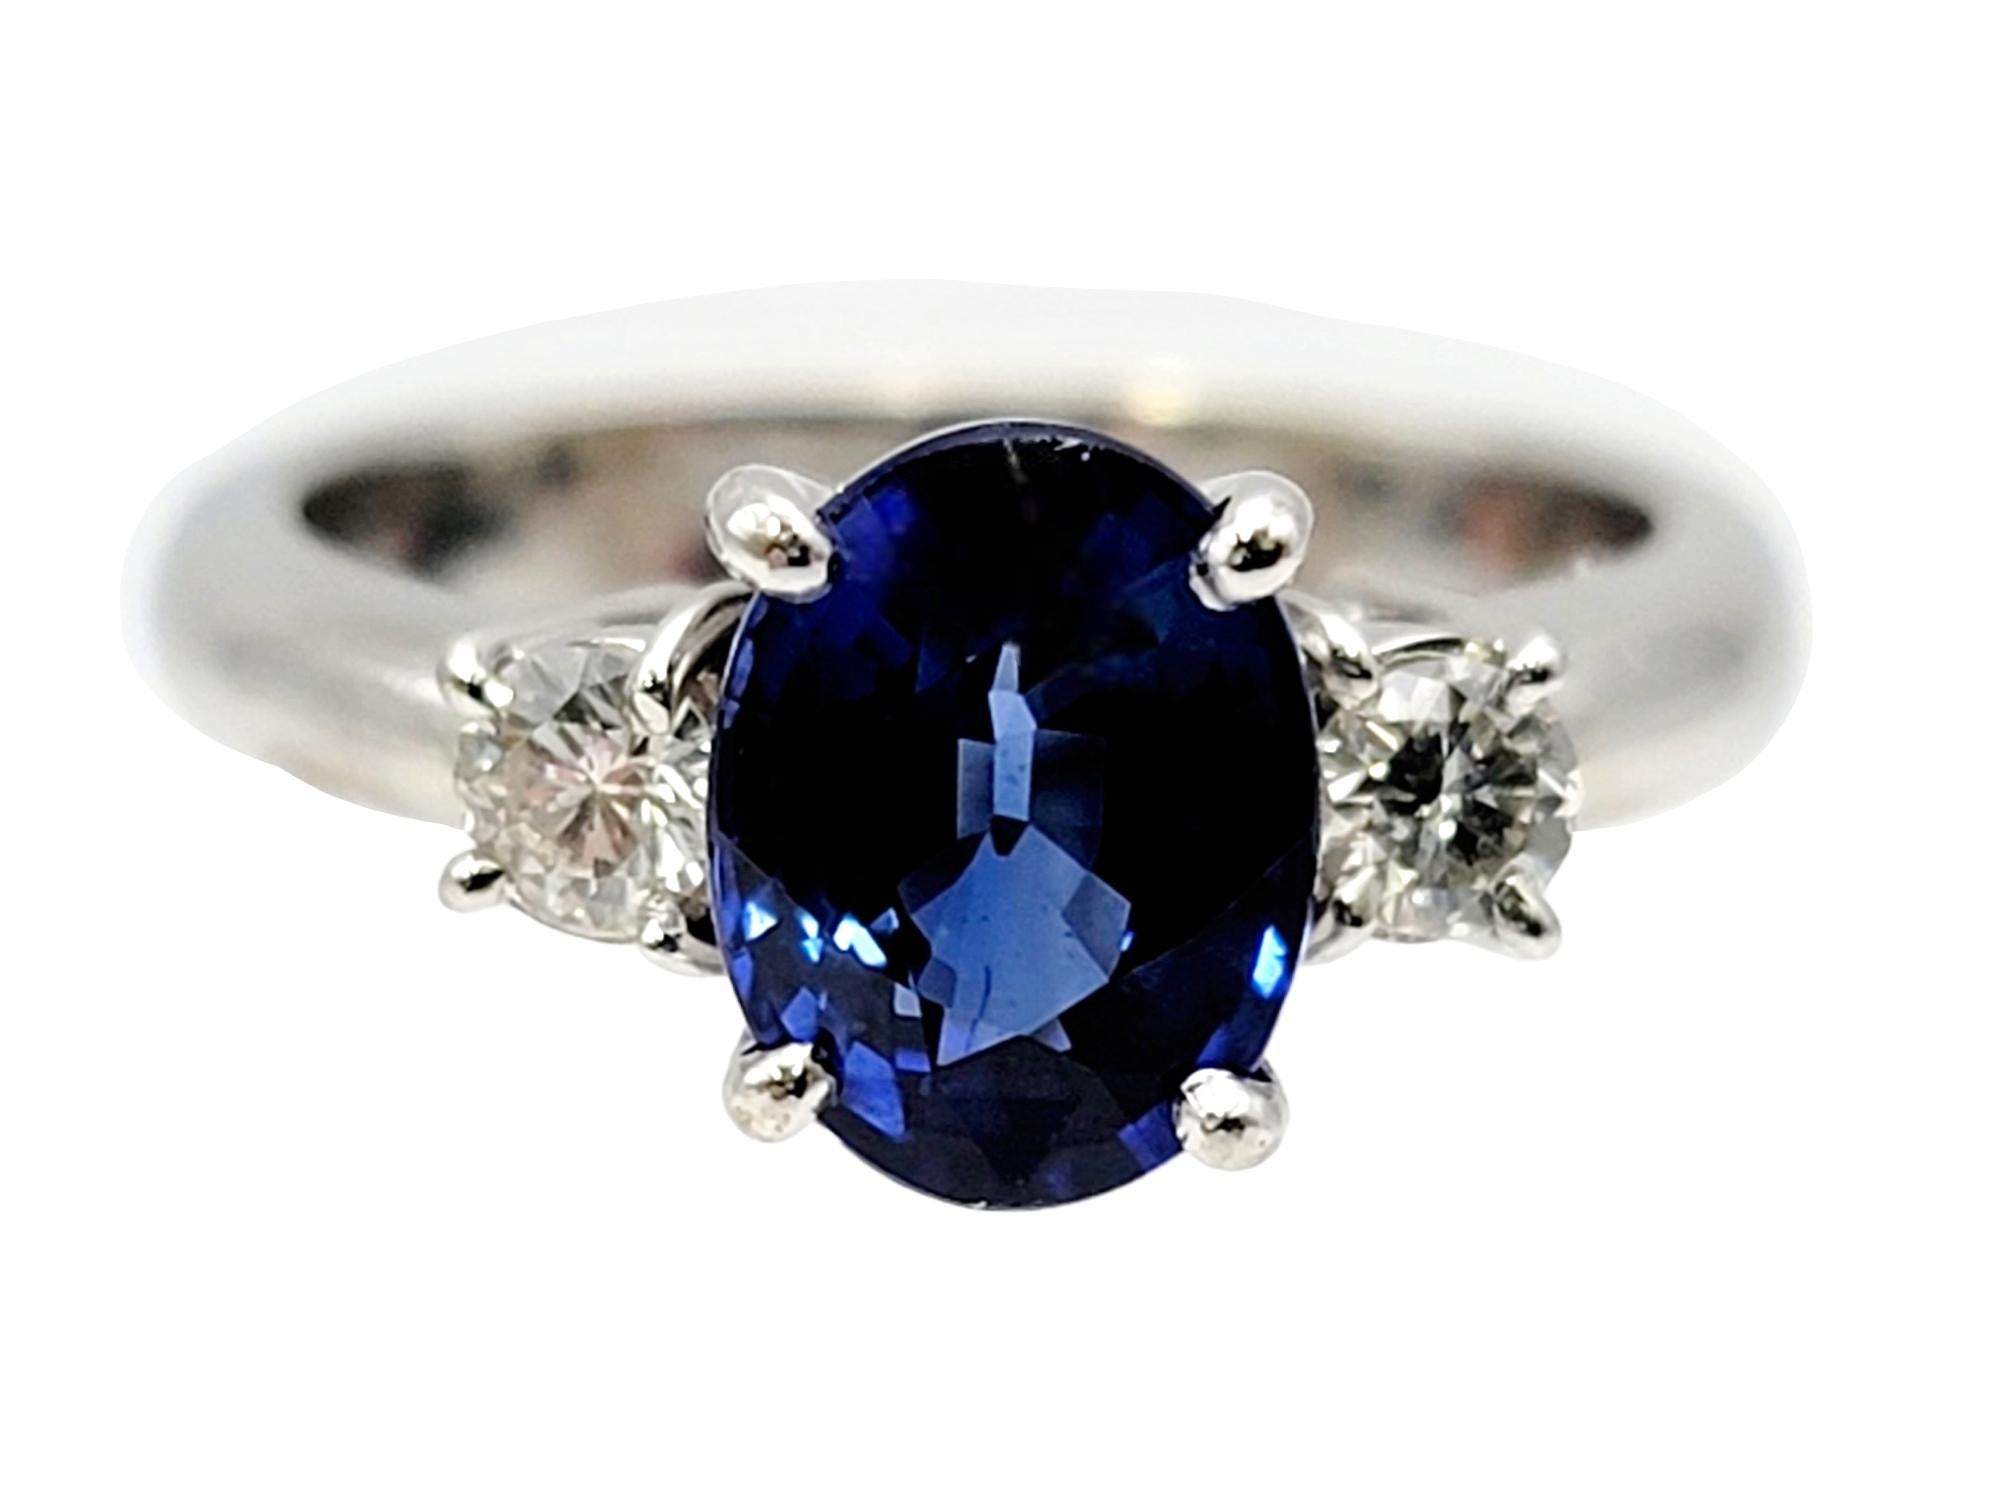 Ringgröße: 5.25

Wunderschöner Ring mit drei Steinen, Saphiren und Diamanten. Ein unglaublicher ovaler, gemischt geschliffener natürlicher Saphir ist in der Mitte des Schmuckstücks in Zacken gefasst und wird von 2 runden Diamanten flankiert. Die